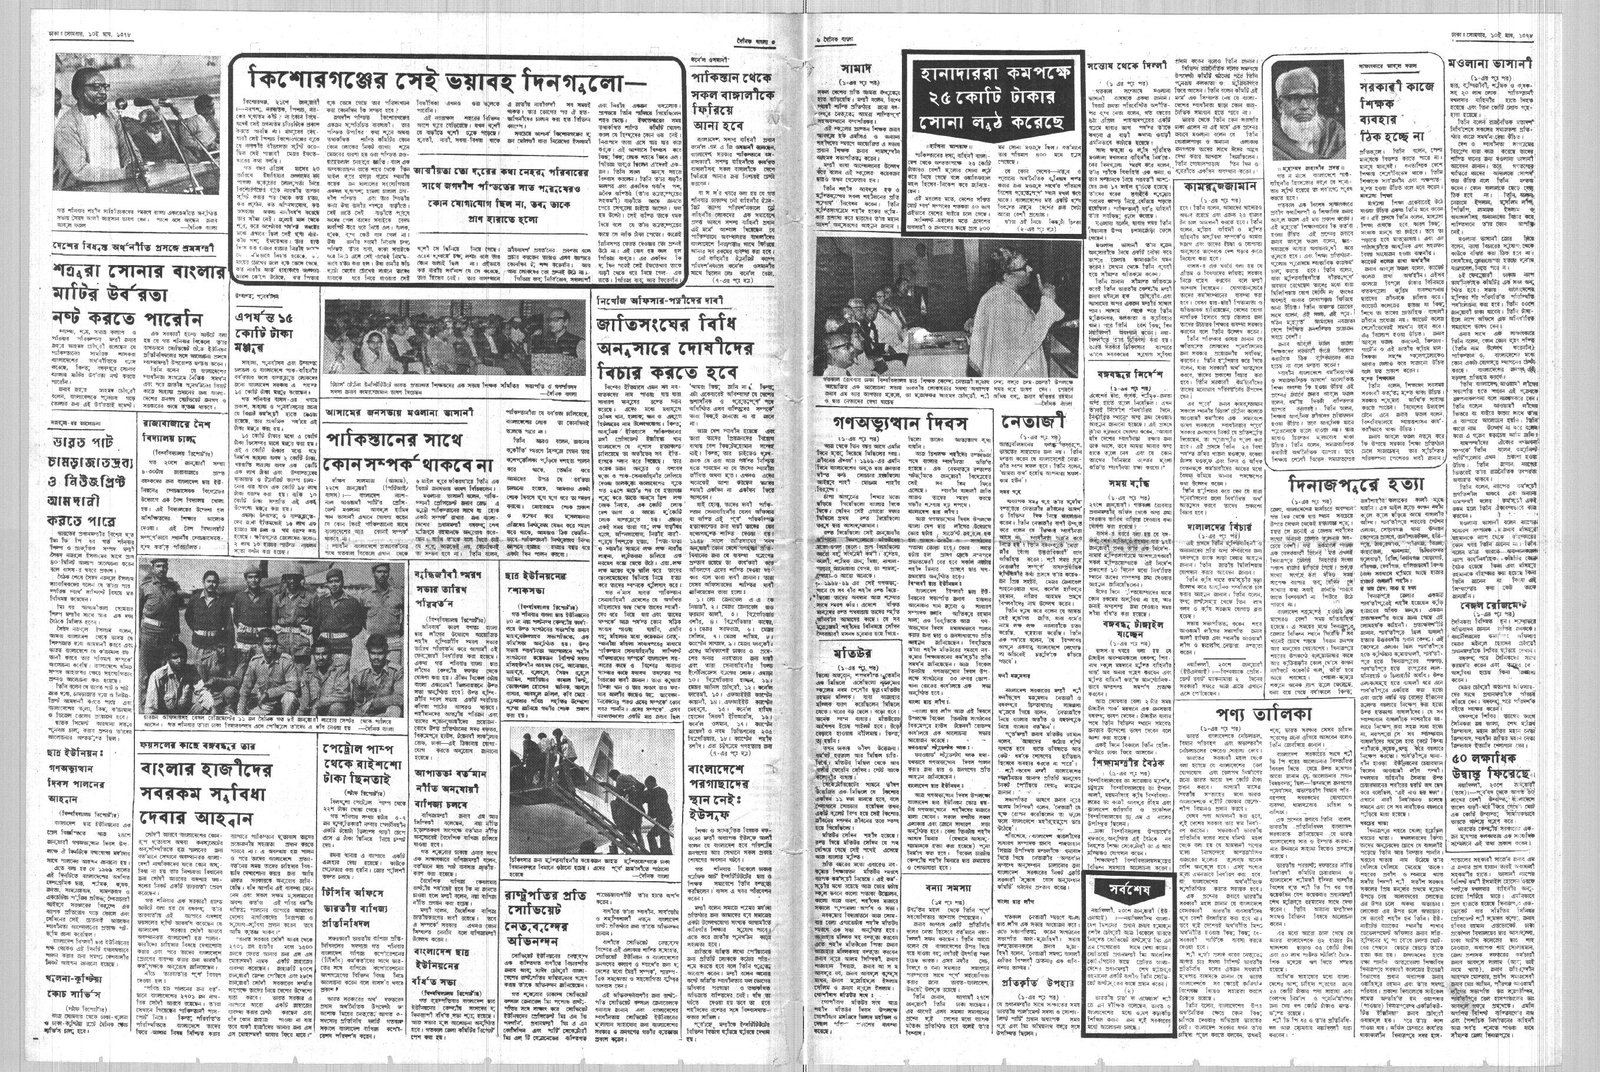 24JAN1972-DAINIK BANGLA-Regular-Page 3 and 6